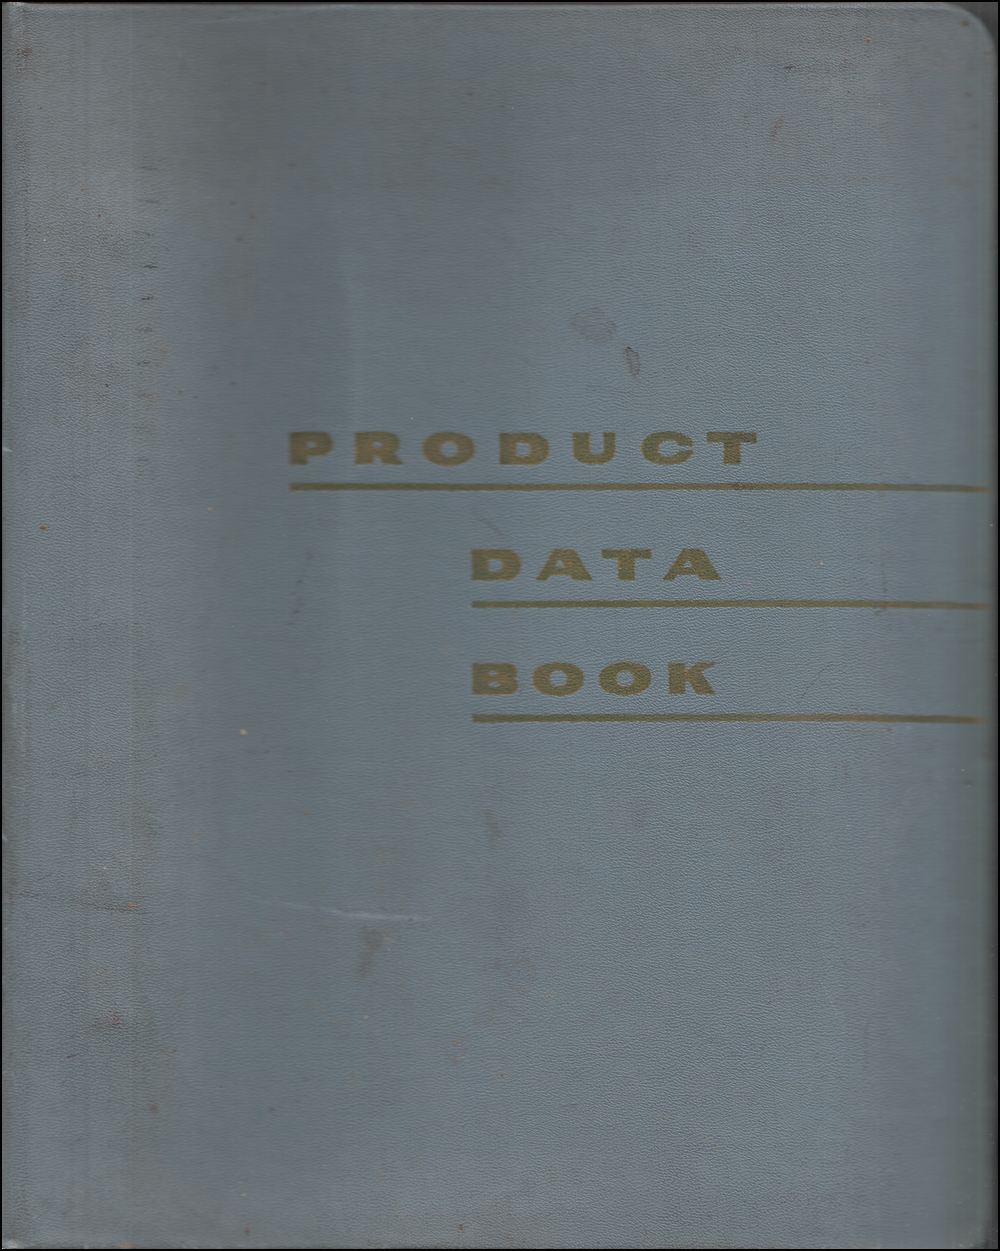 1966 Mercury Data Book Original